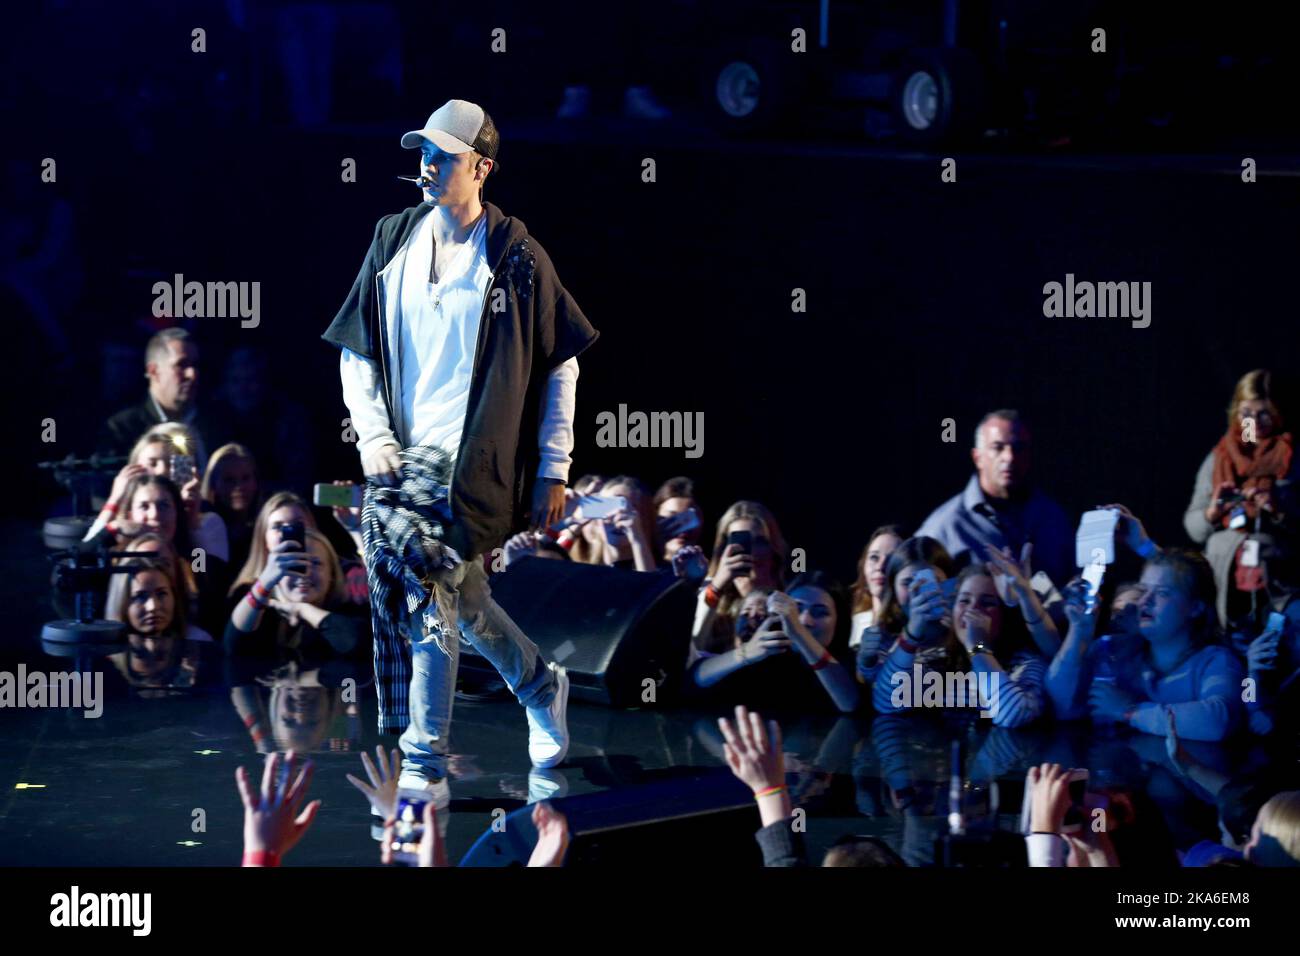 Justin Bieber abandona el escenario durante un mini concierto en Oslo, el 29 de octubre de 2015. Foto por Heiko Junge, NTB scanpix Foto de stock